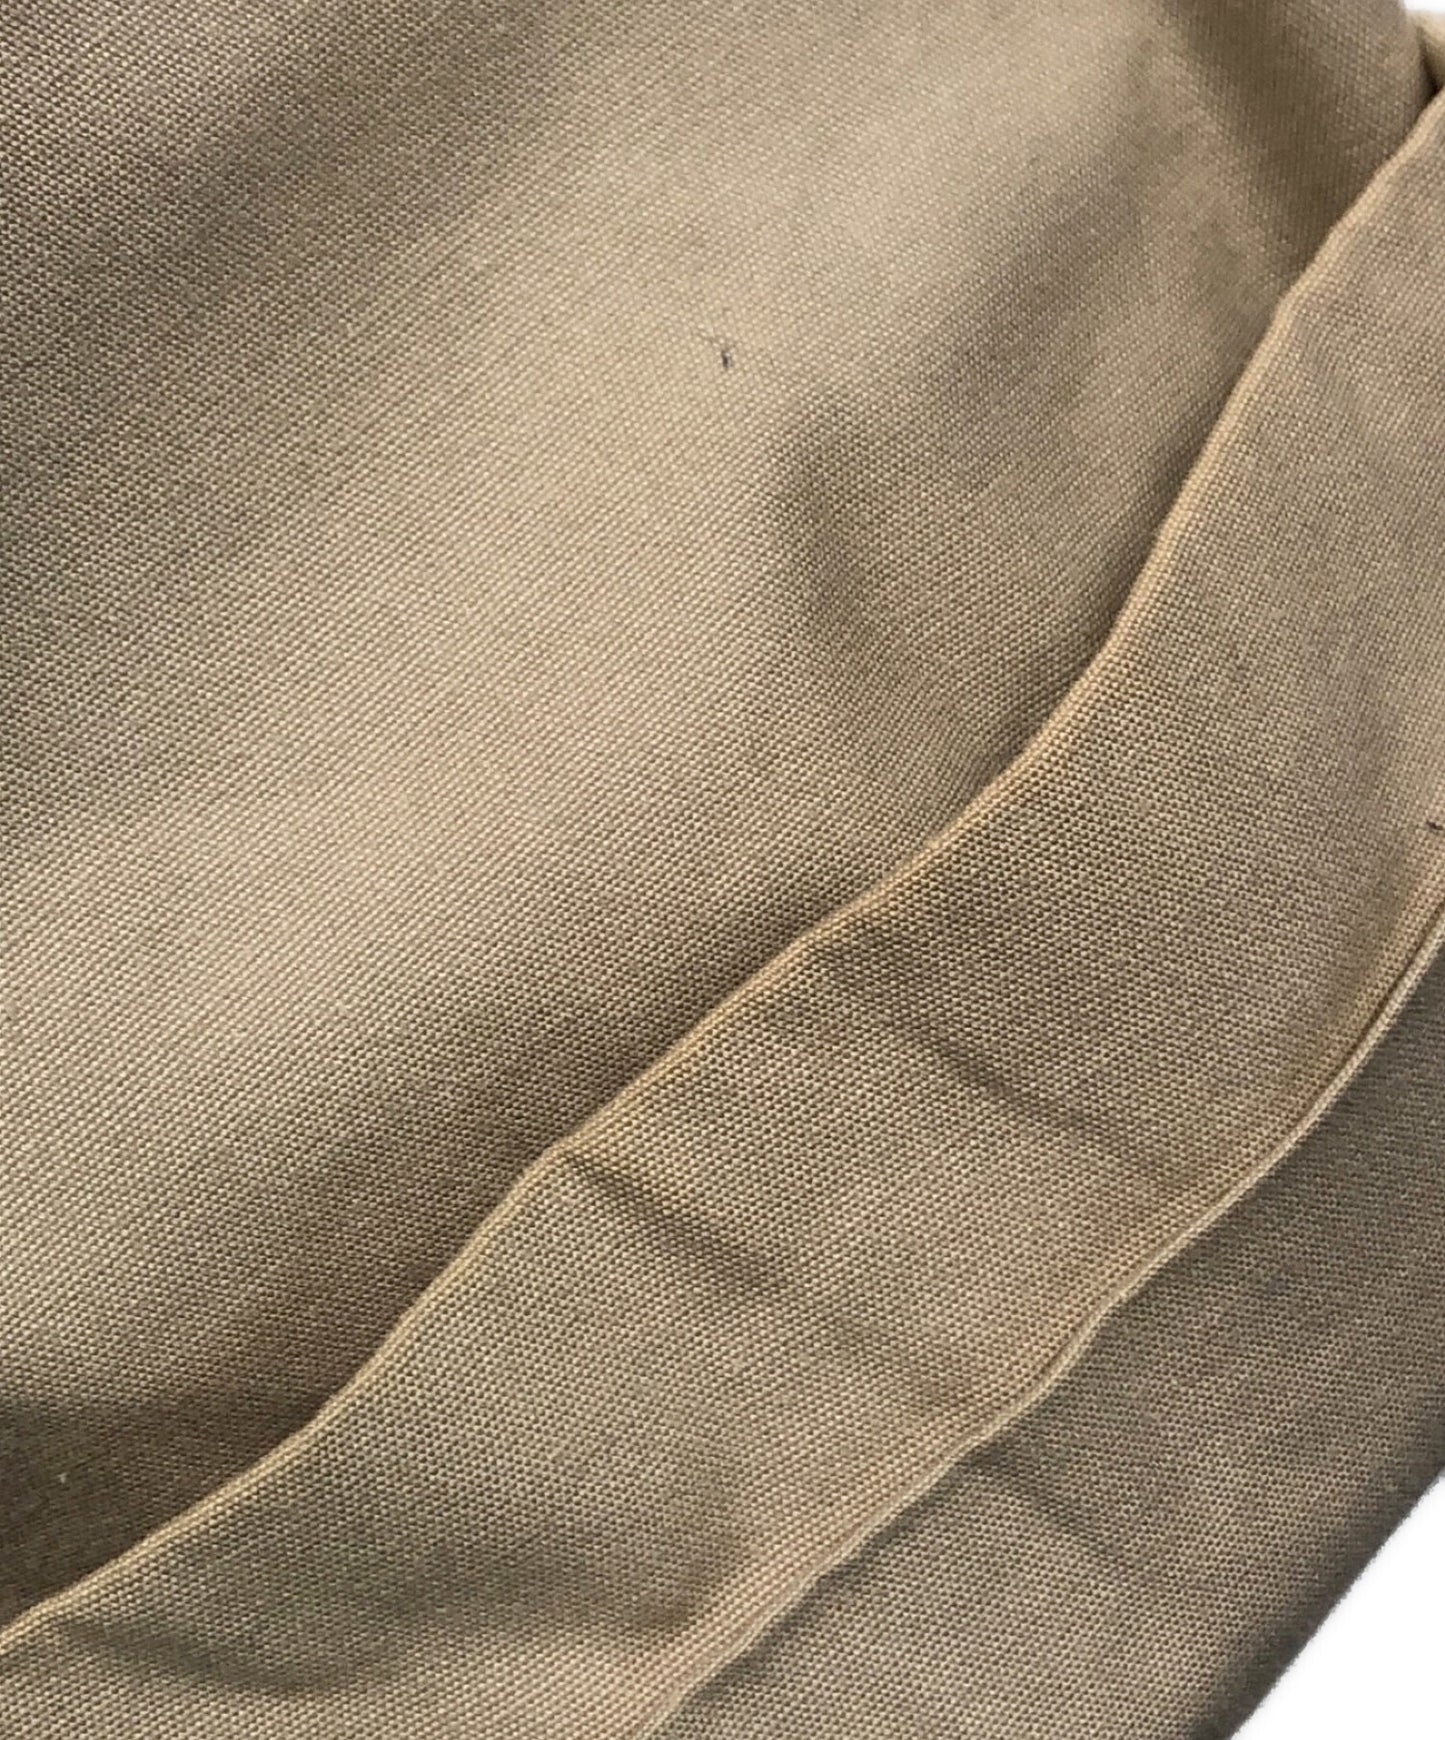 เสื้อโค้ทร่องของ Y / ยาว / สี / แจ๊กเก็ต / แขนเสื้อ raglan yf-c02-003